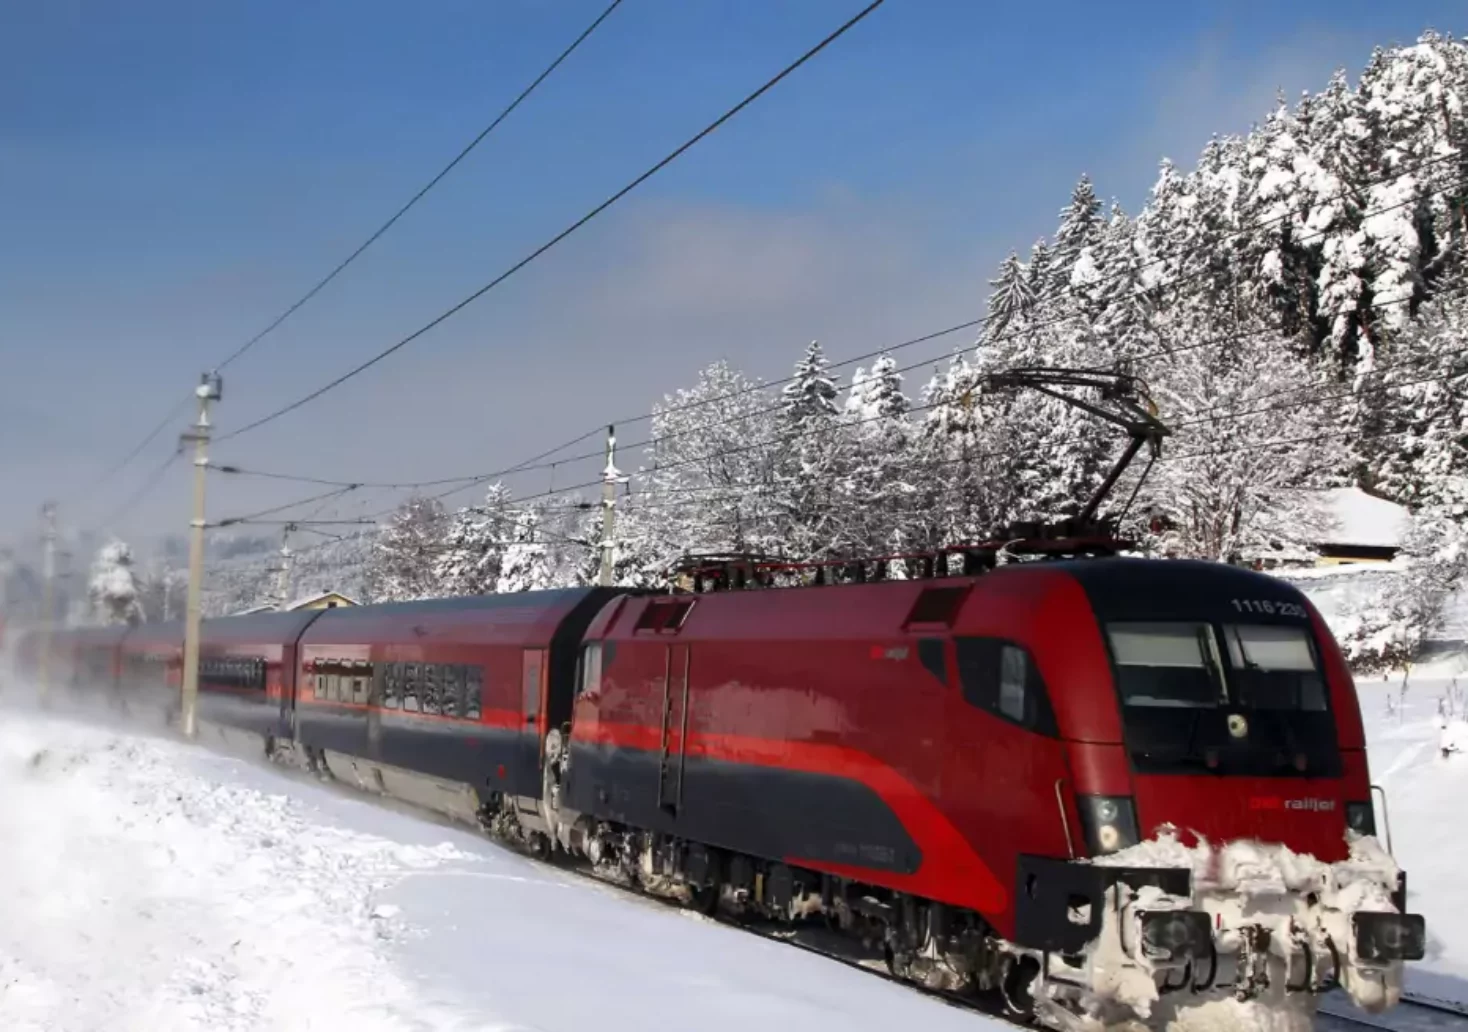 Bild auf 5min.at zeigt einen Zug im Winter.